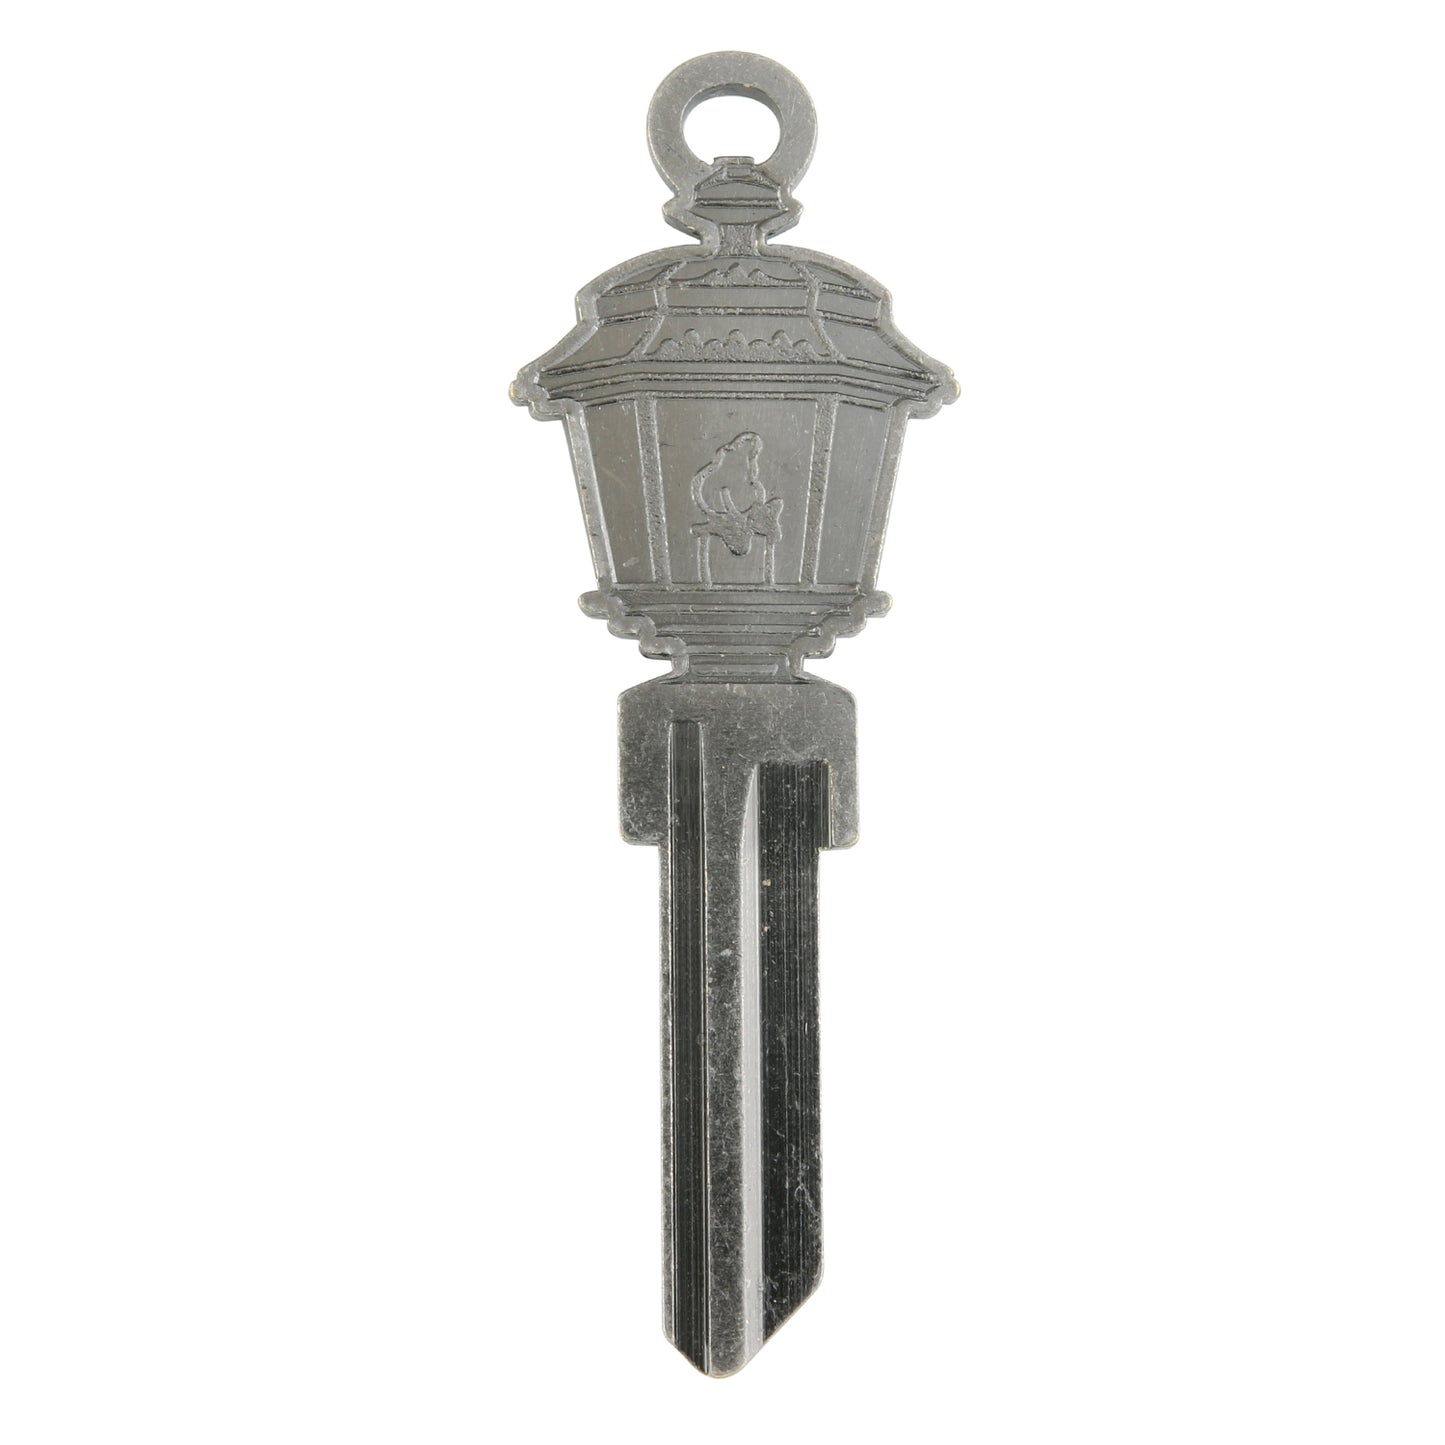 Lit Lantern Key - Silver